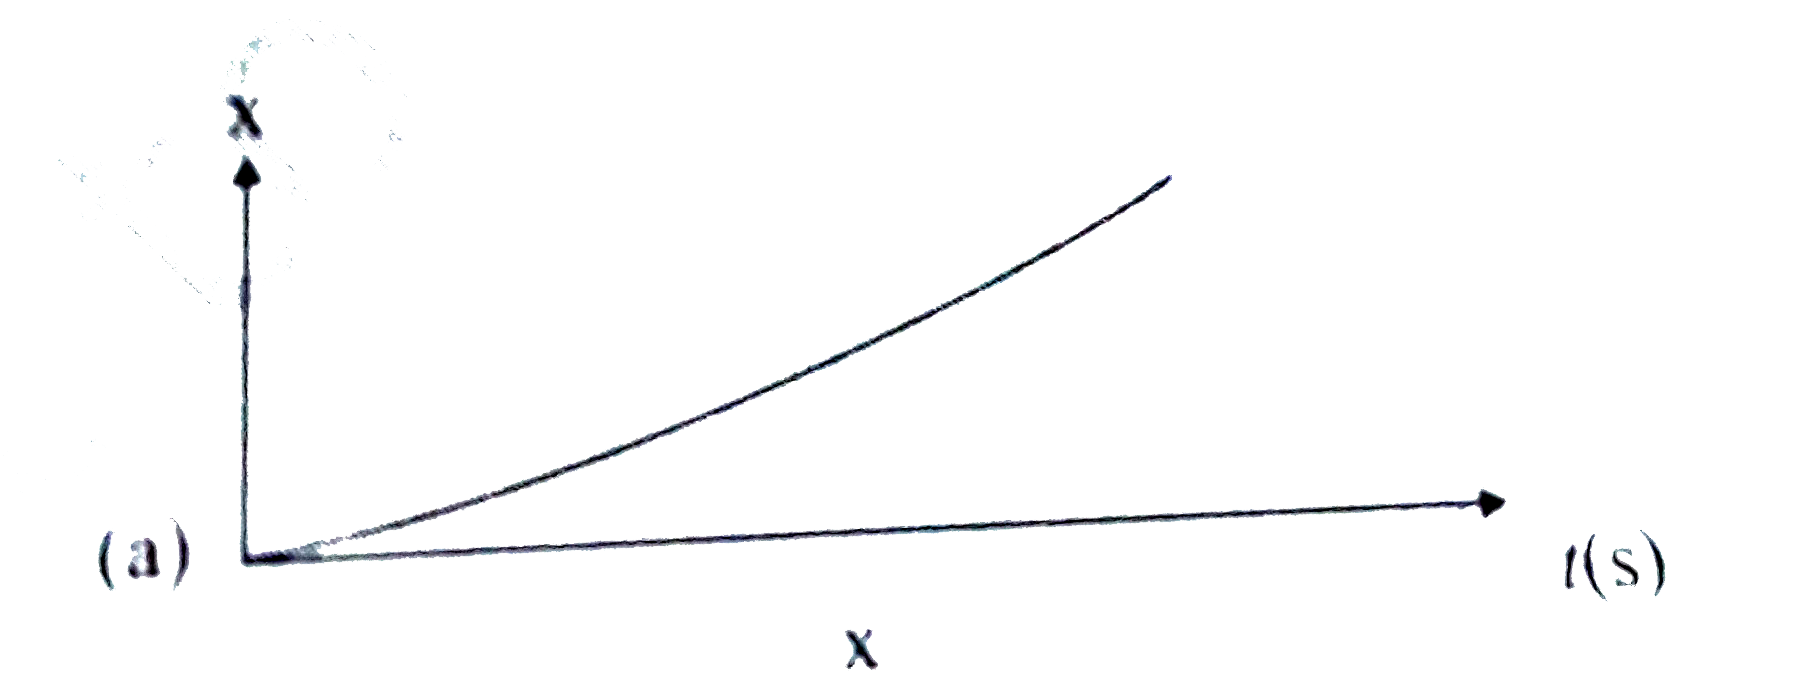 किसी कण की रैखिक गति के लिए चार x-t आरेख दिए गए हैं | इनमे से कौन-सा  आरेख  आवर्ती  गति का निरूपण  करता हैं ? उस गति का आवर्तकाल क्या हैं (आवर्ती  गति  वाली गति का ) |